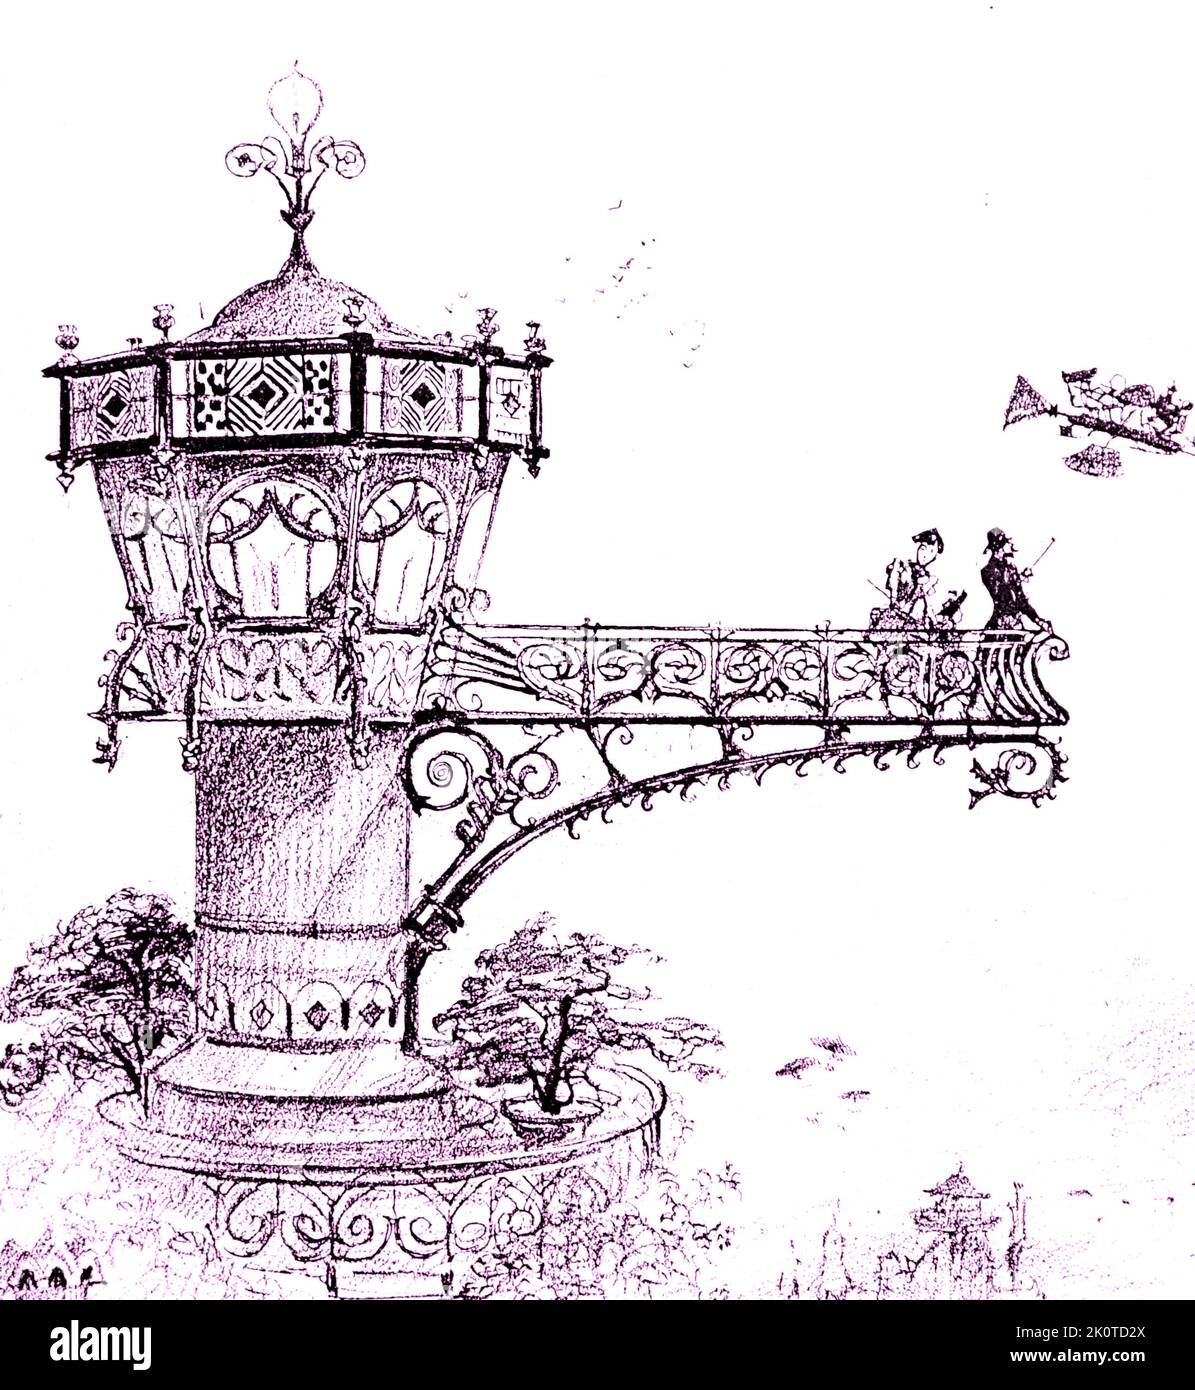 Dessin futuriste montrant une plate-forme d'atterrissage d'hôtel pour monter à bord d'un taxi aérien. De Robida, le Vingtieme Siecle, Paris 1883 ; Banque D'Images